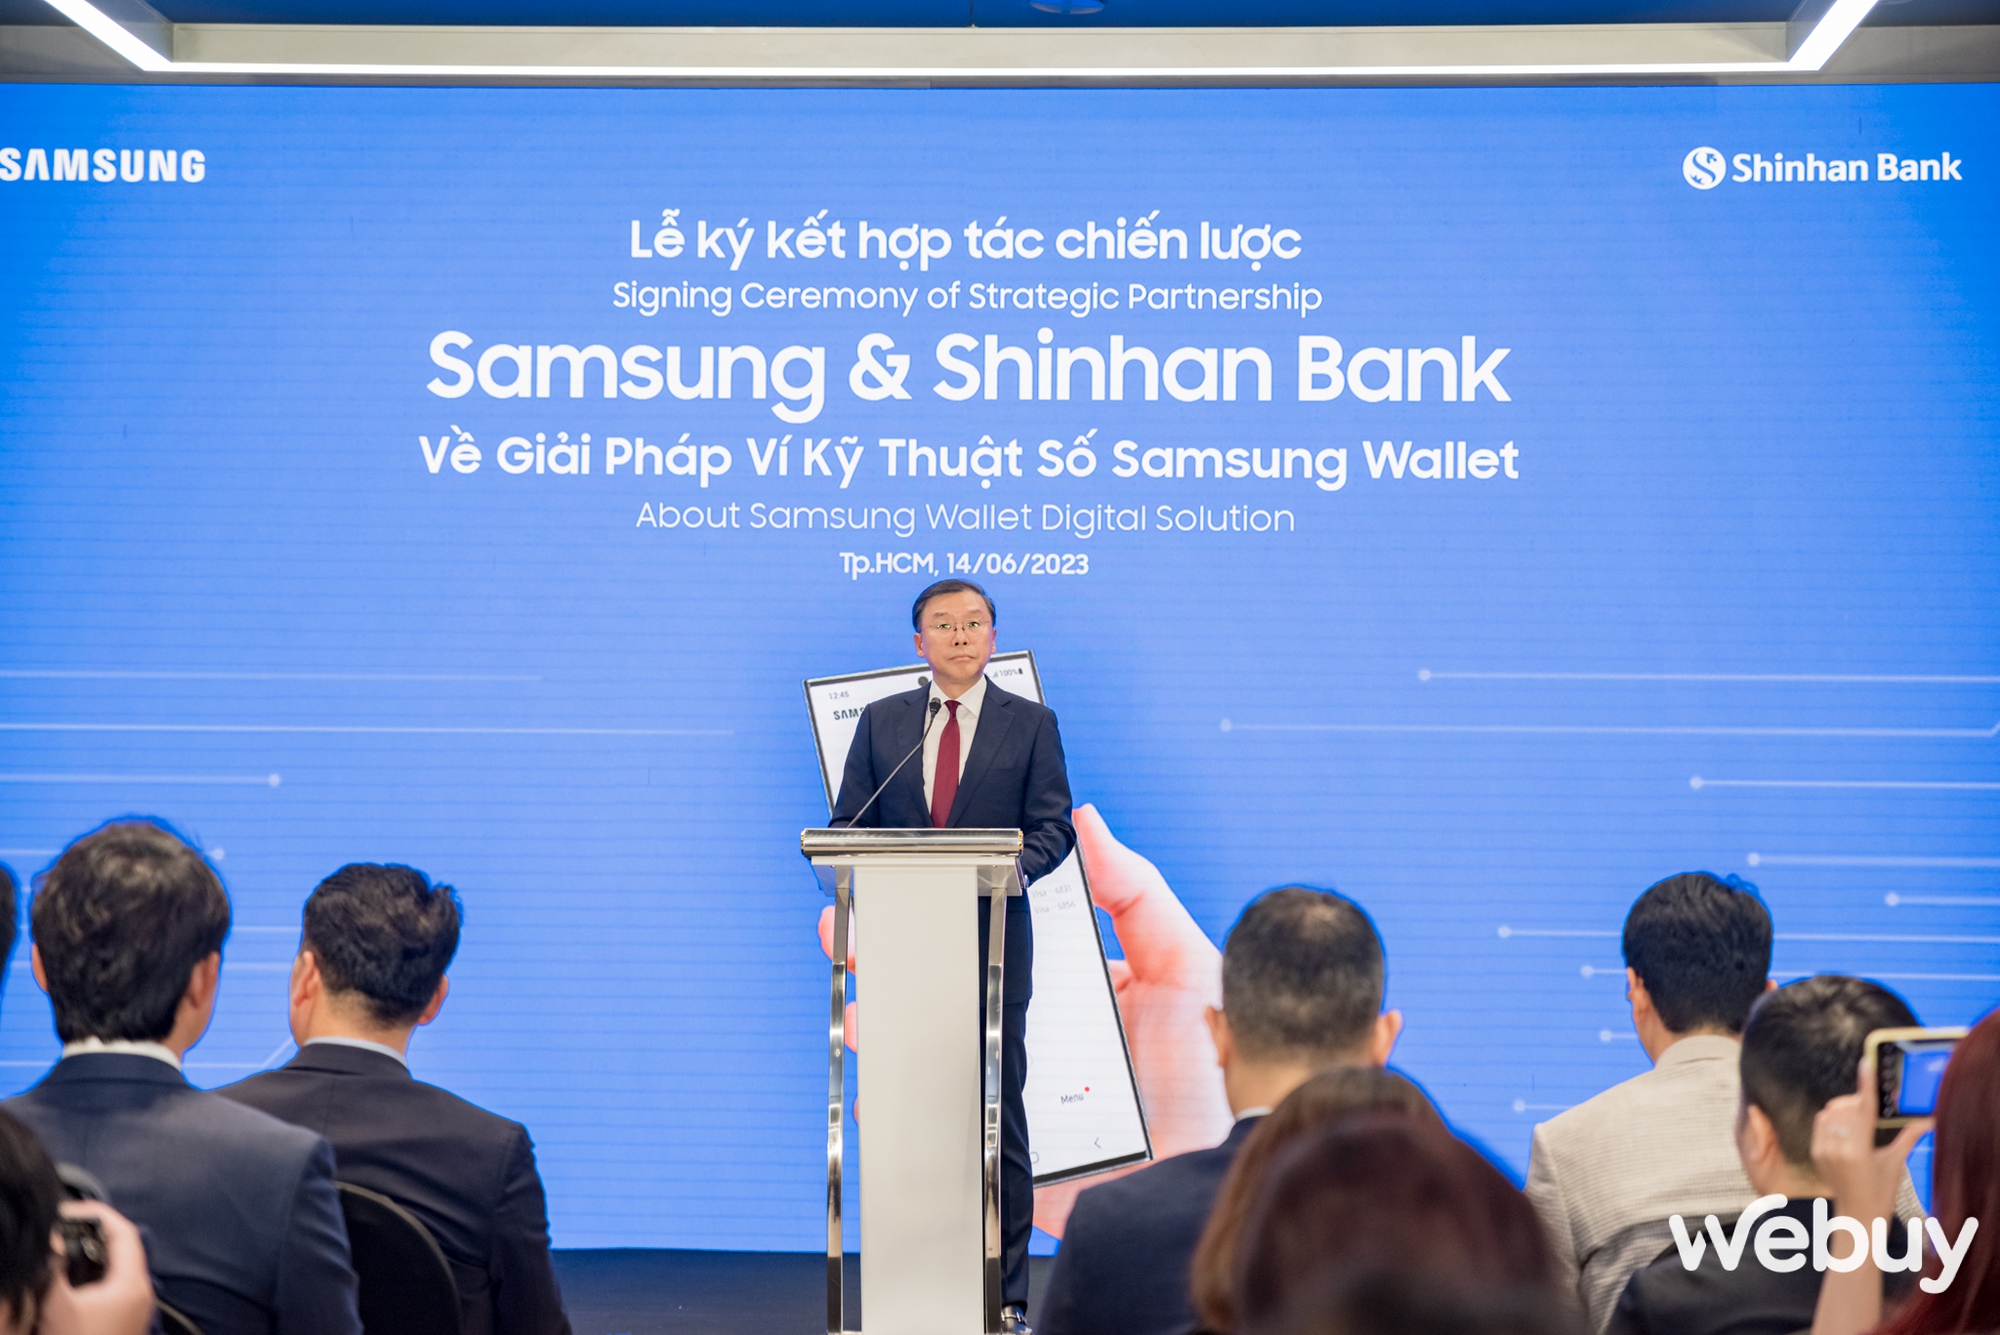 Samsung “bắt tay” Shinhan Bank, đẩy mạnh triển khai ví kỹ thuật số Samsung Wallet đến người tiêu dùng Việt - Ảnh 2.